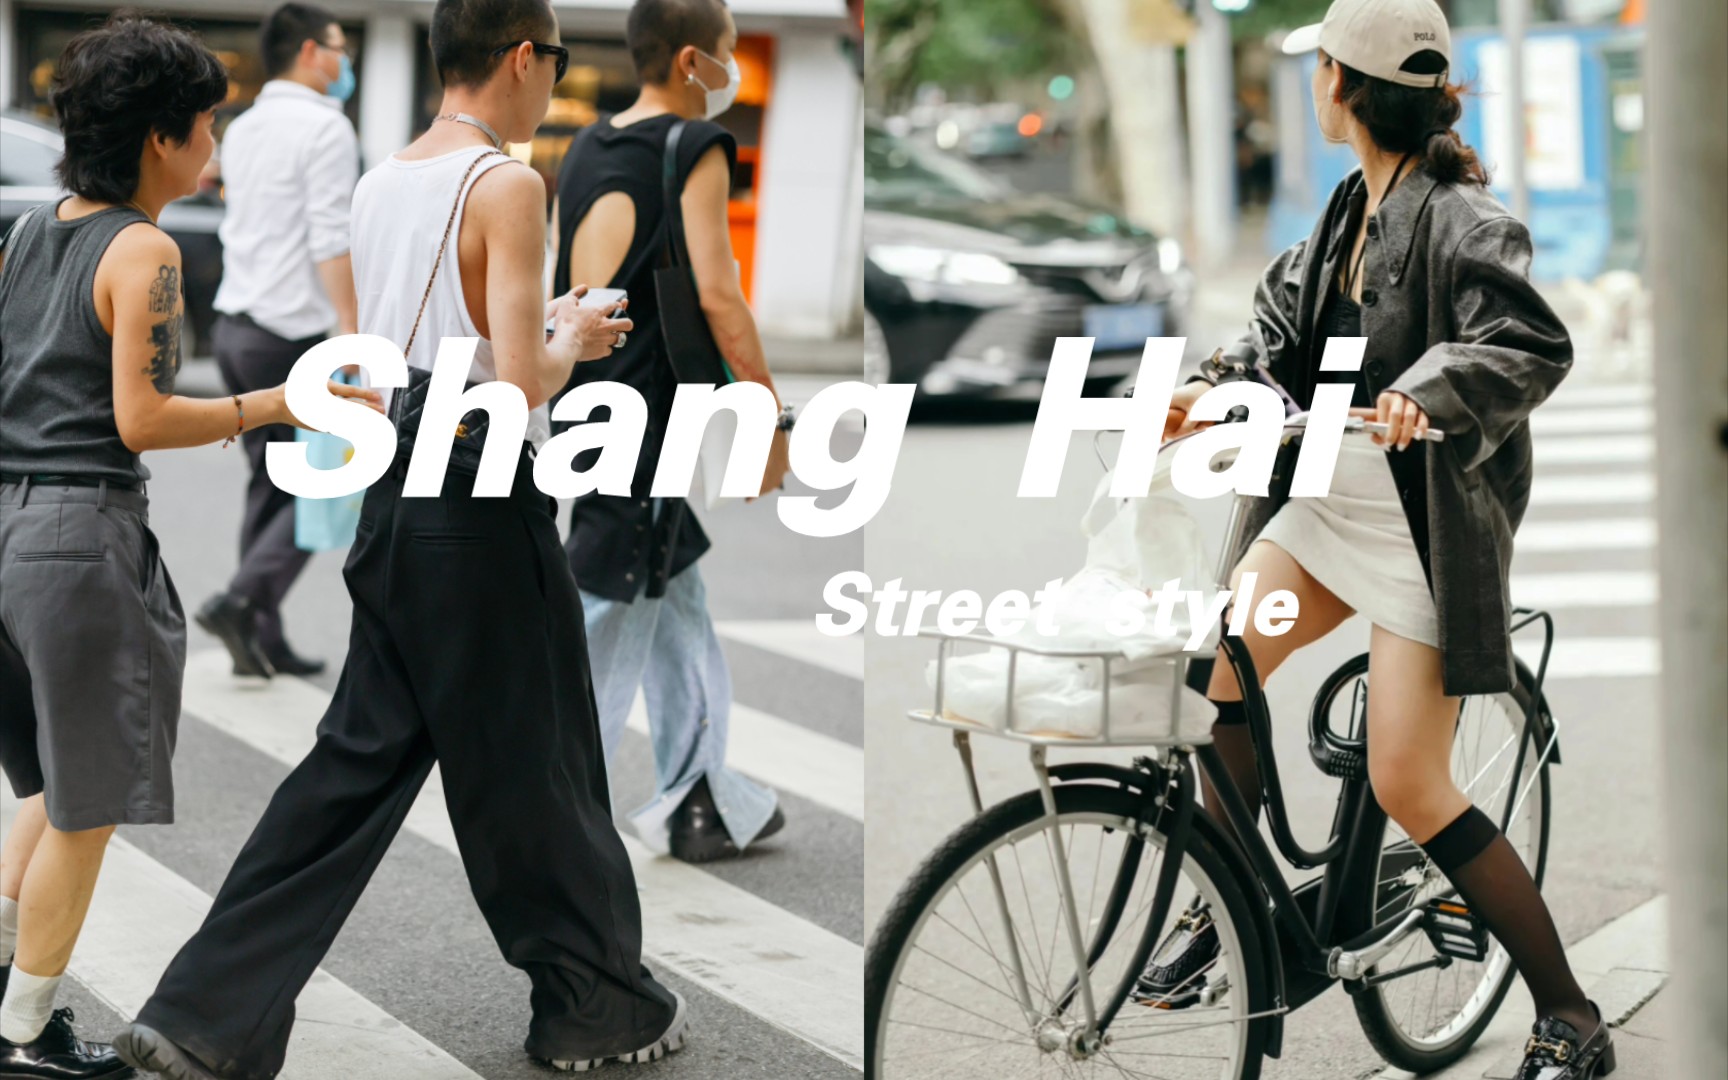 上海街女商人穿着优雅的丝绸衬衫走人 库存图片. 图片 包括有 豪华, 注视的, 专业人员, 中国, 成熟 - 199636725